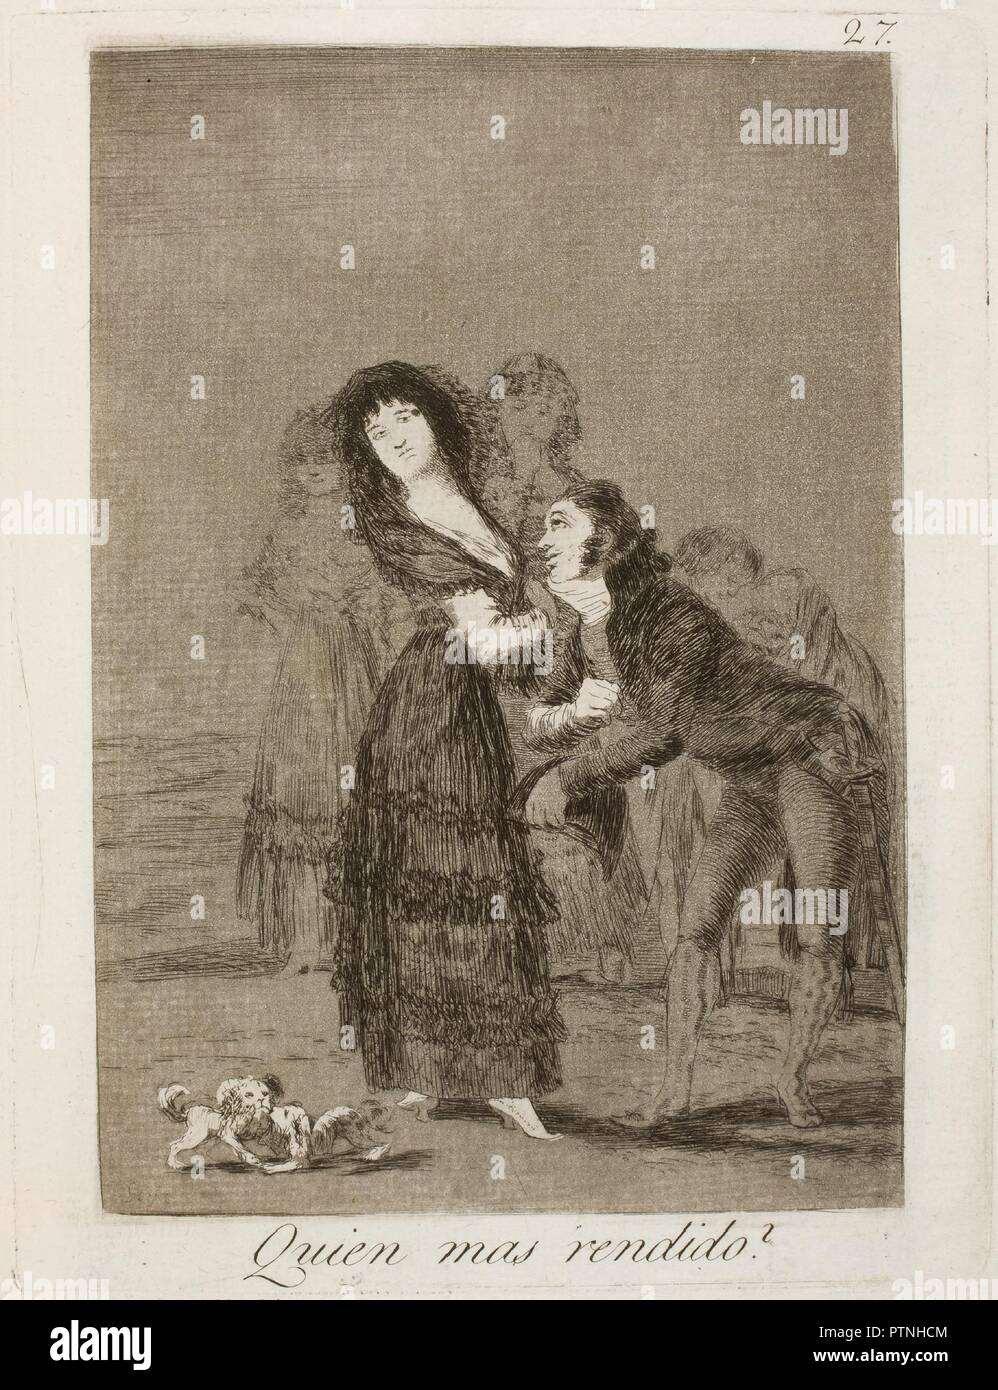 Francisco de Goya y Lucientes/', die mehr zu bewundern sein könnte?". 1797 - 1799. Radierung, Aquatinta und Kaltnadel auf Elfenbein Bütten. Museum: Museo del Prado, Madrid, España. Stockfoto